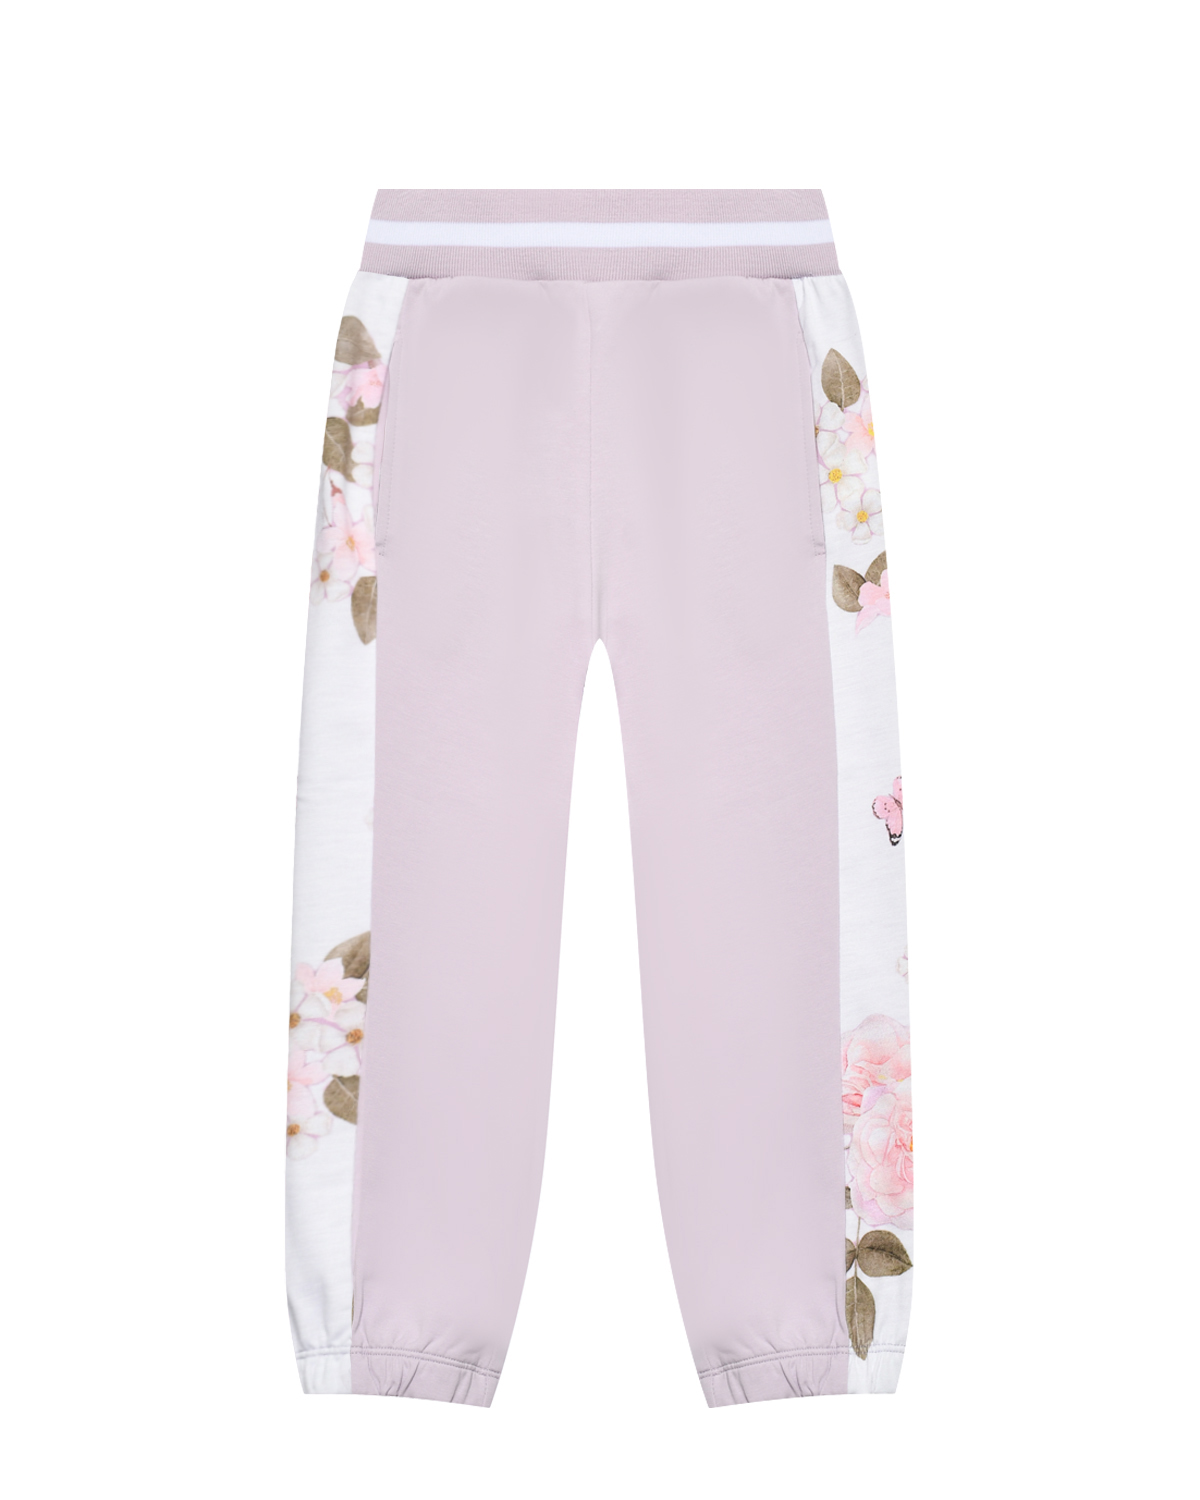 Спортивные брюки с цветочными лампасами Monnalisa, размер 116 - фото 1